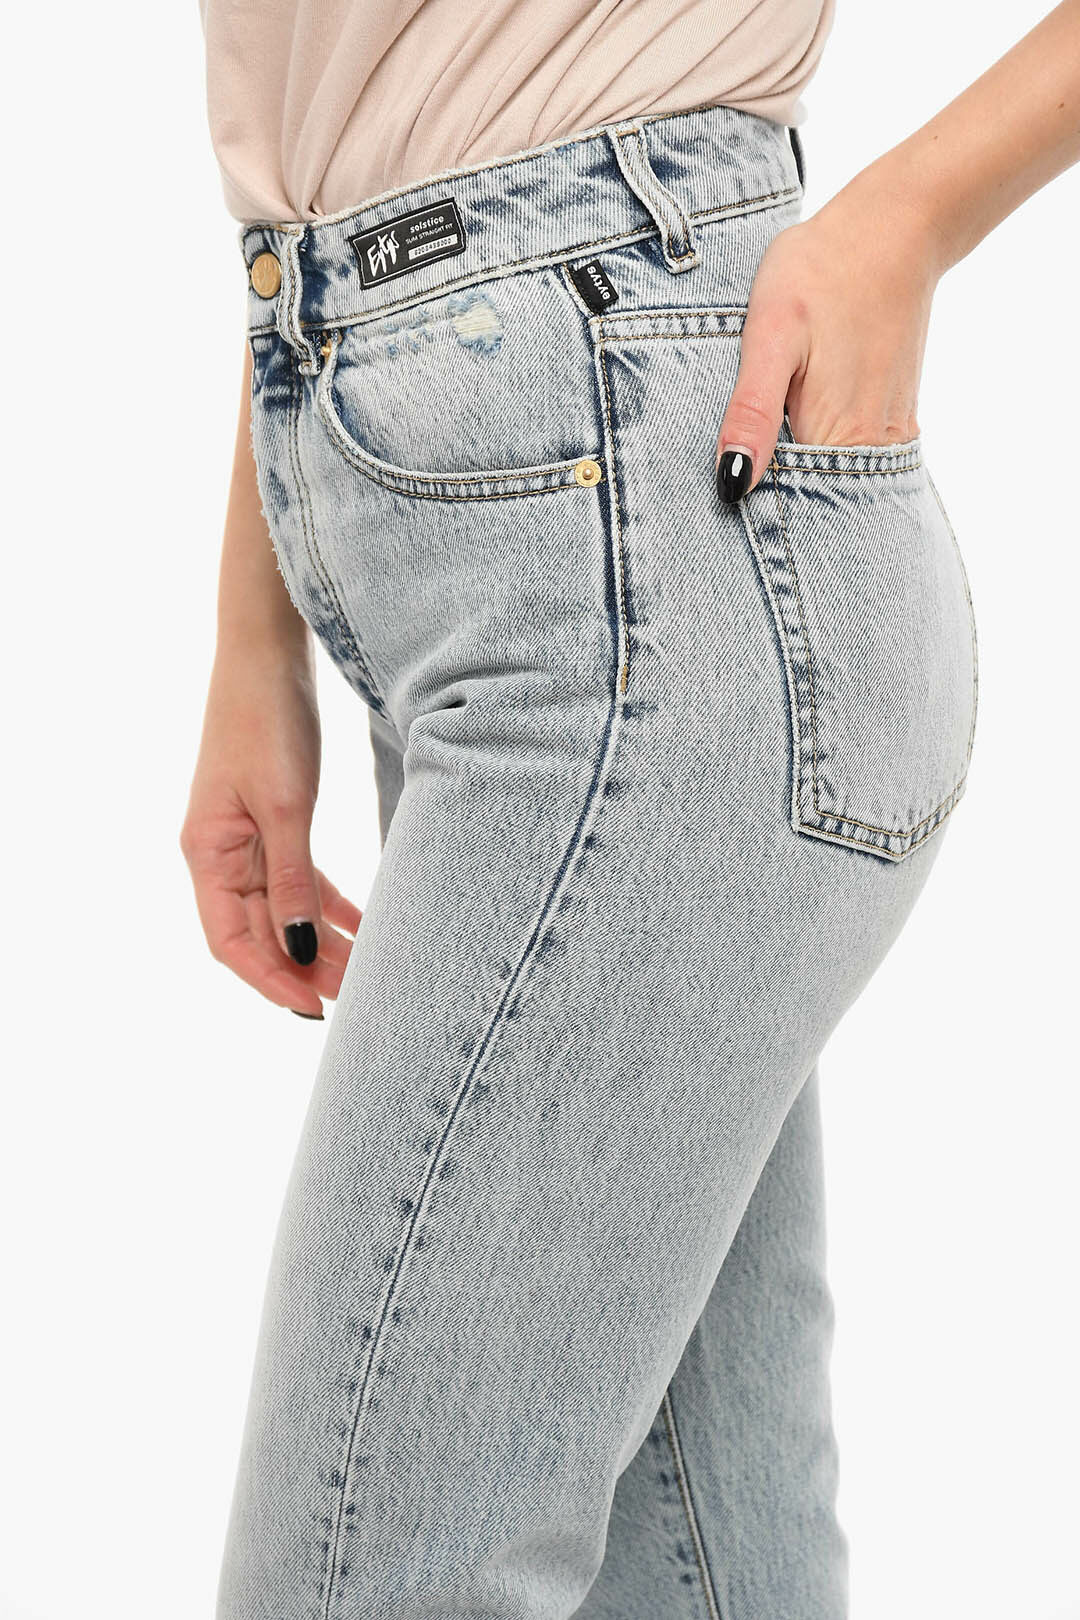 Long Stilt Pants 2023 Women's Jeans Embroidered Slim Straight